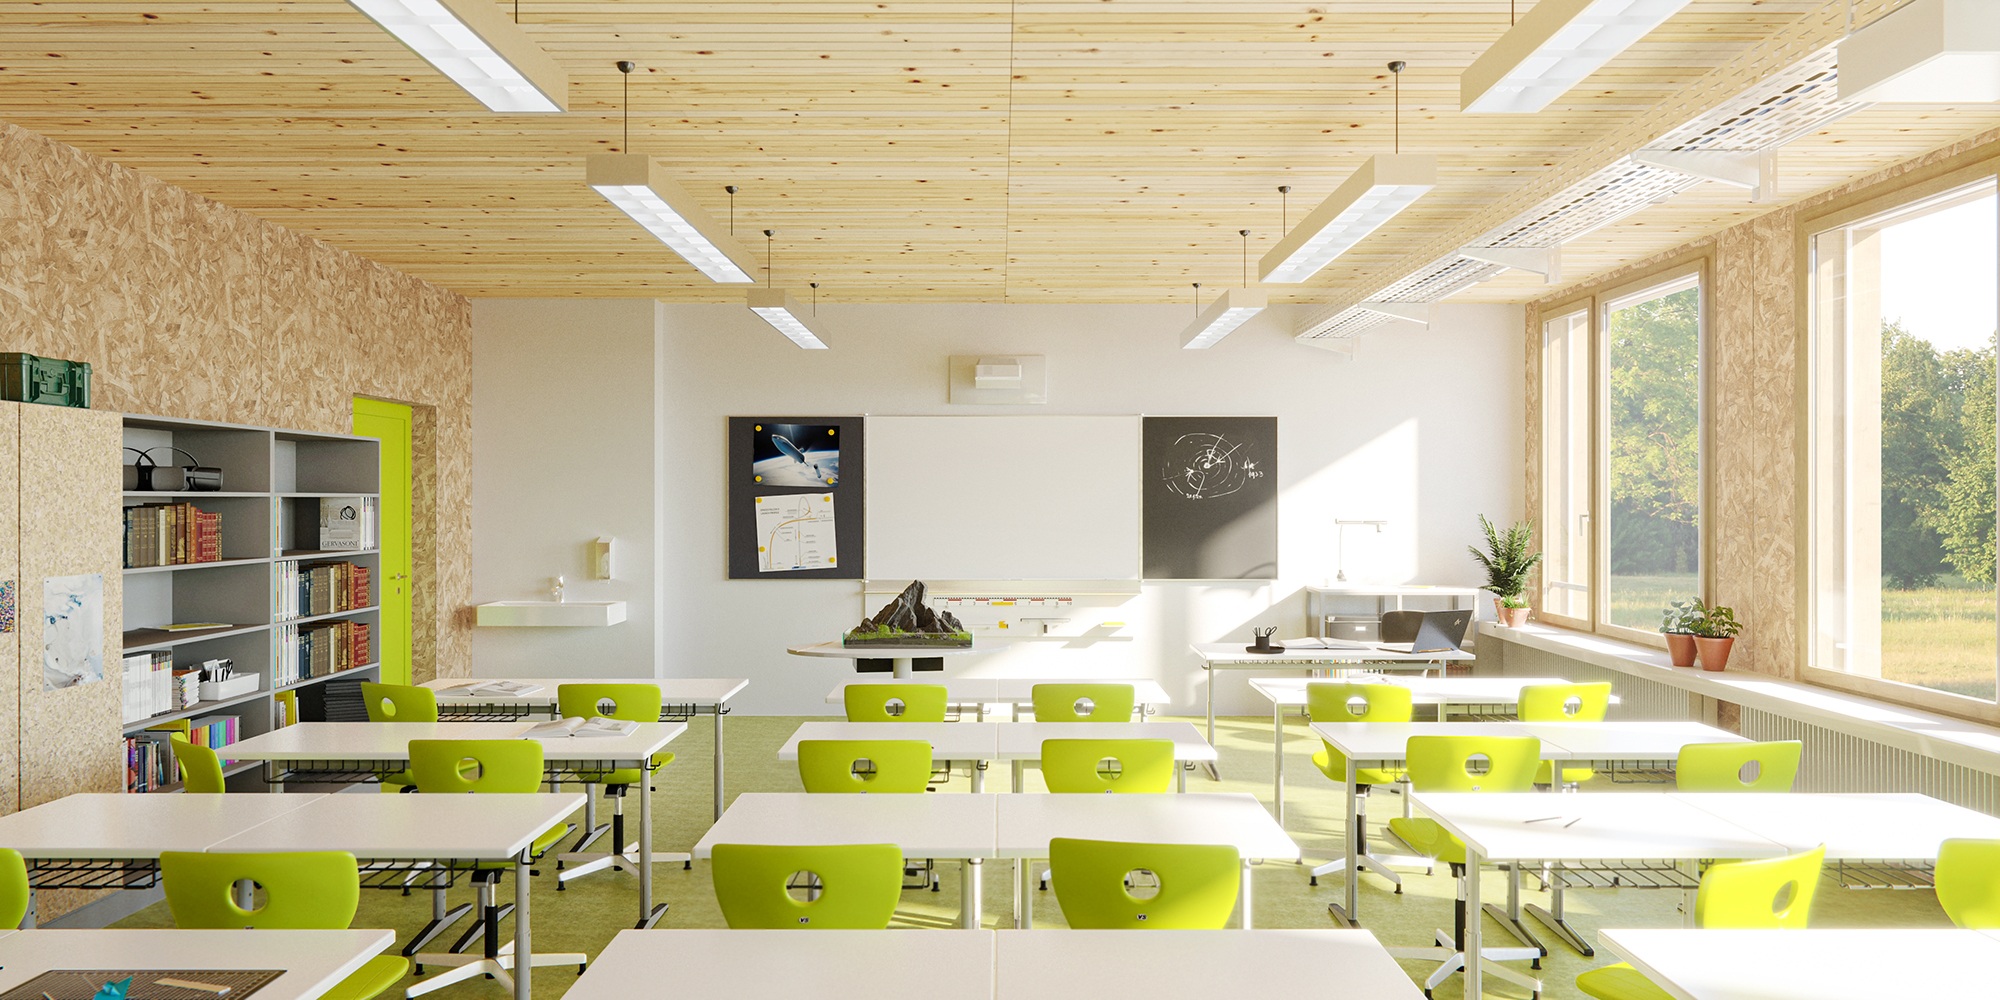 möbliertes Klassenzimmer und Inneneinrichtung der Schule in Holzmodulbauweise